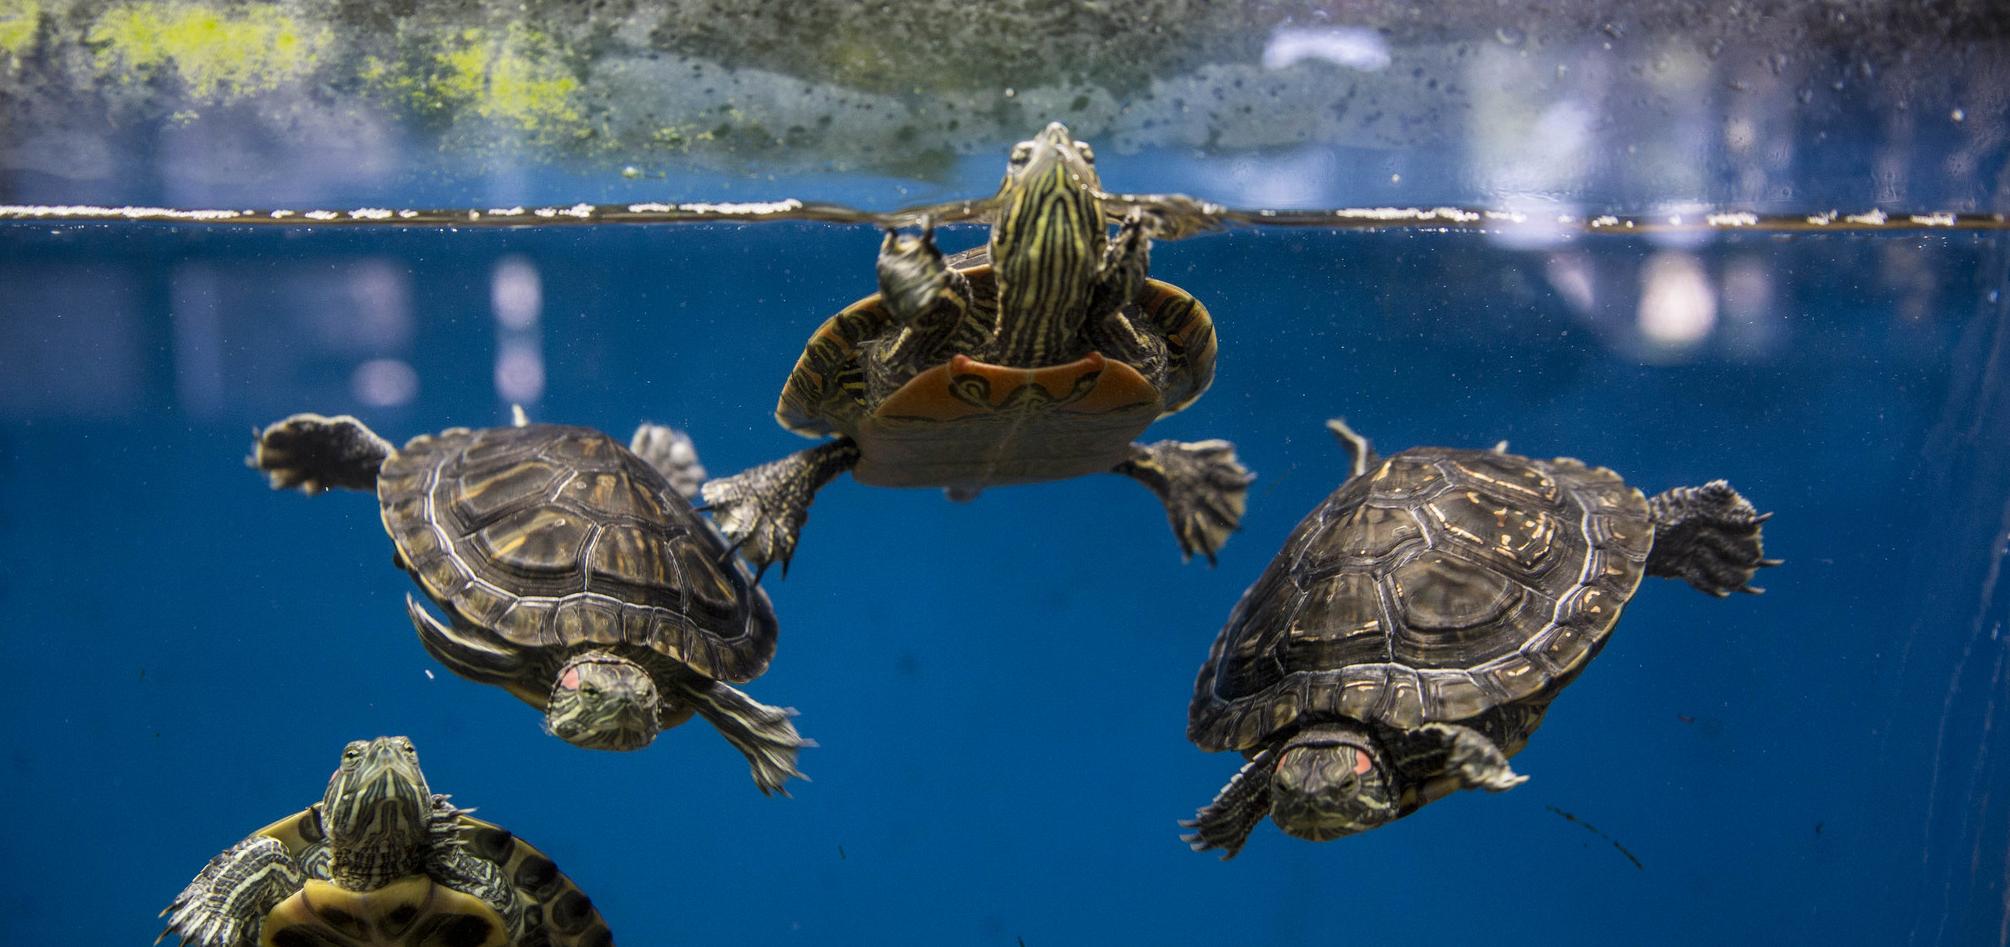 turtles swimming in aquarium